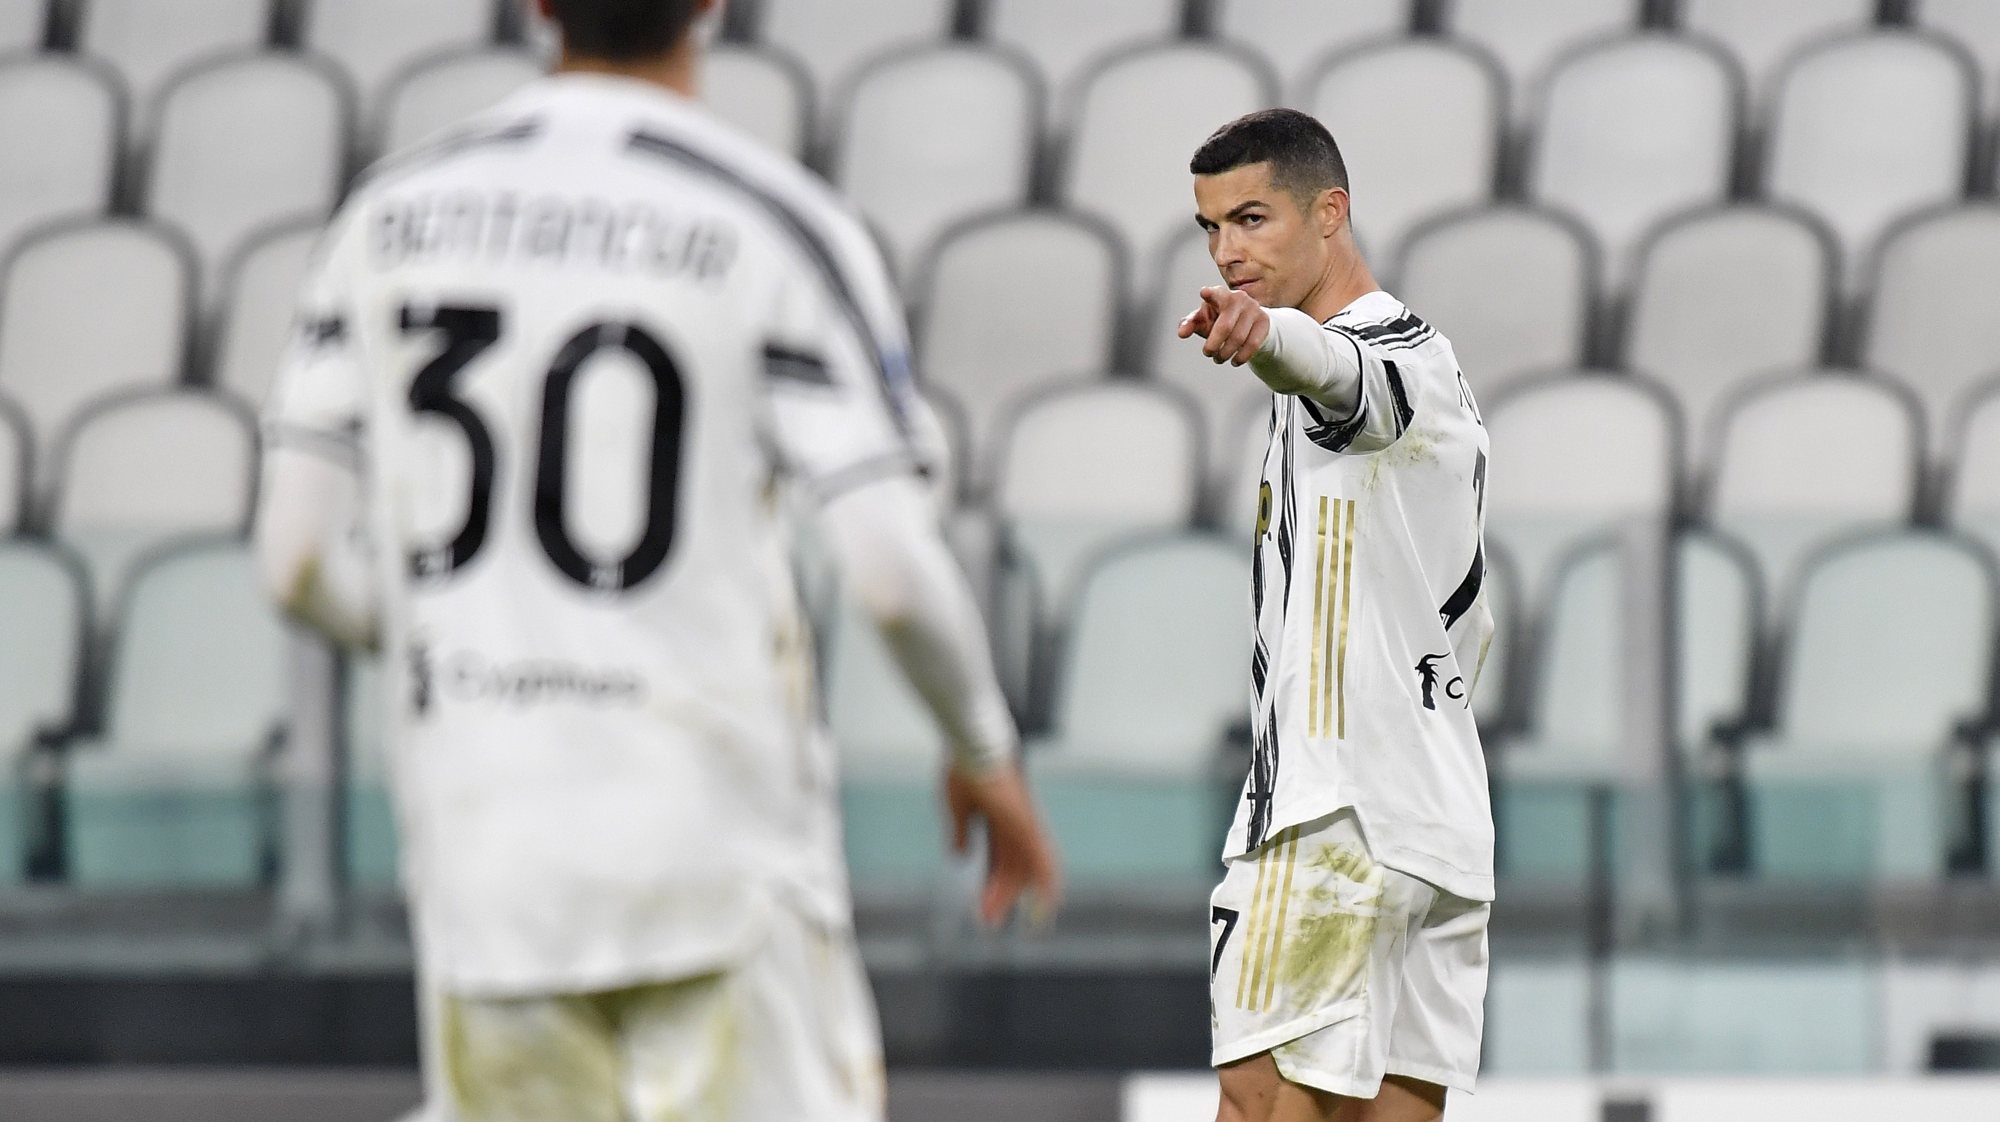 Ronaldo fez um sprint a um minuto do final até à área contrária para fazer de pé esquerdo o terceiro e último golo da Juventus